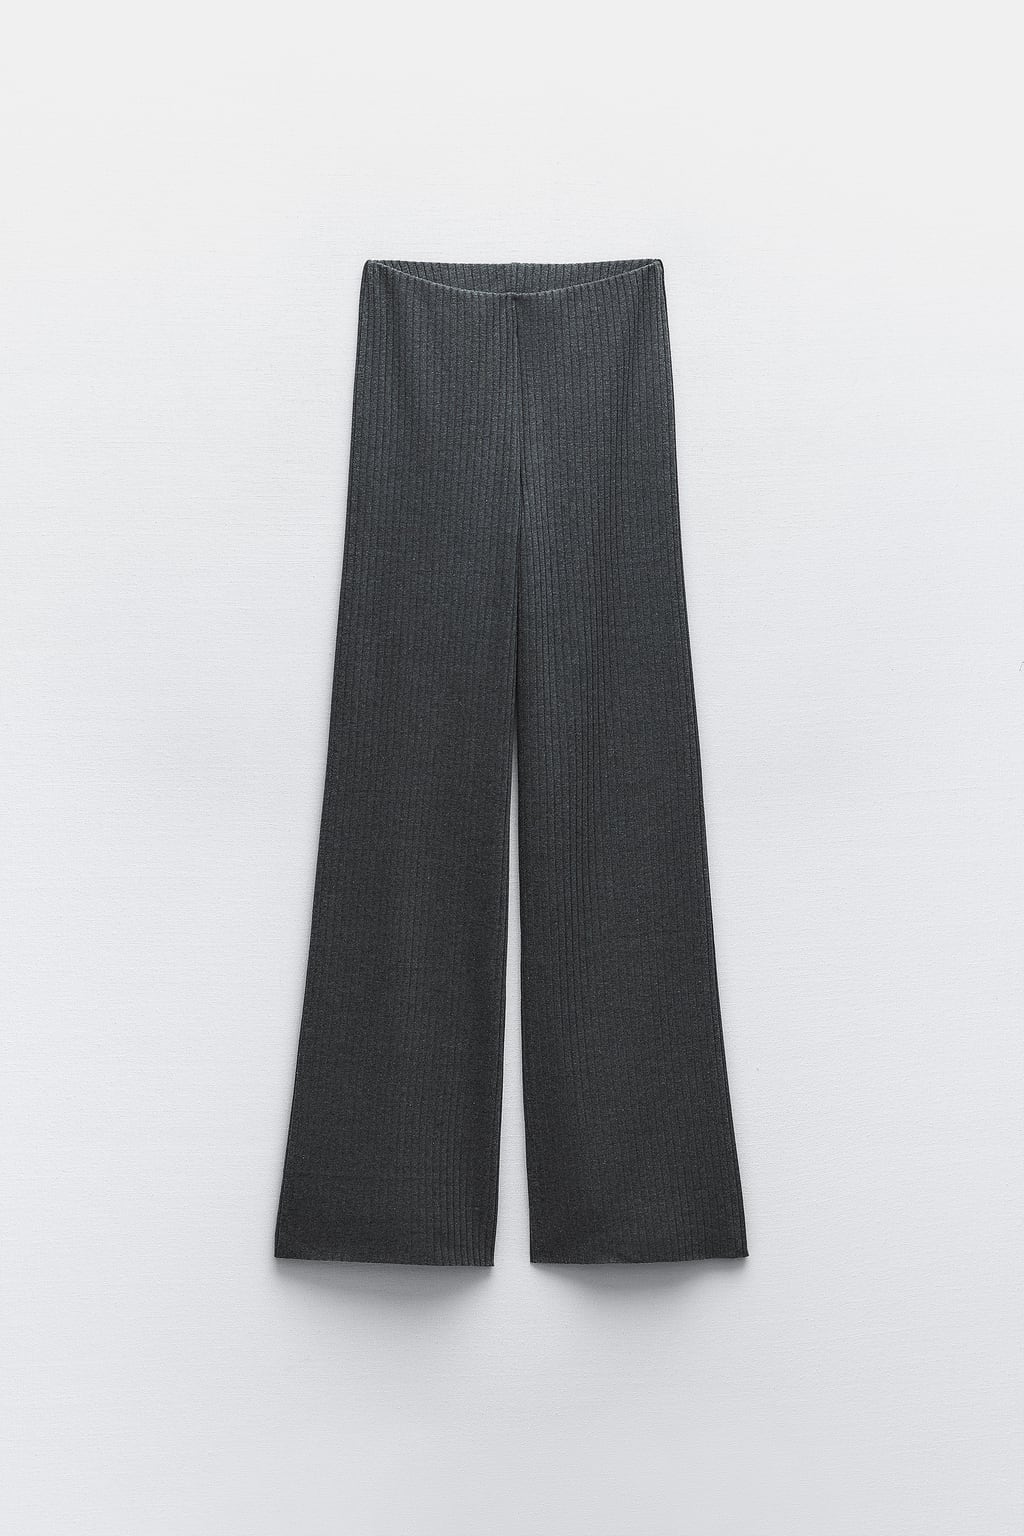 Широкие брюки в рубчик ZARA, серый мергель брюки карандаш женские с завышенной талией повседневные элегантные тонкие штаны с широкими штанинами с эластичным поясом модная уличная